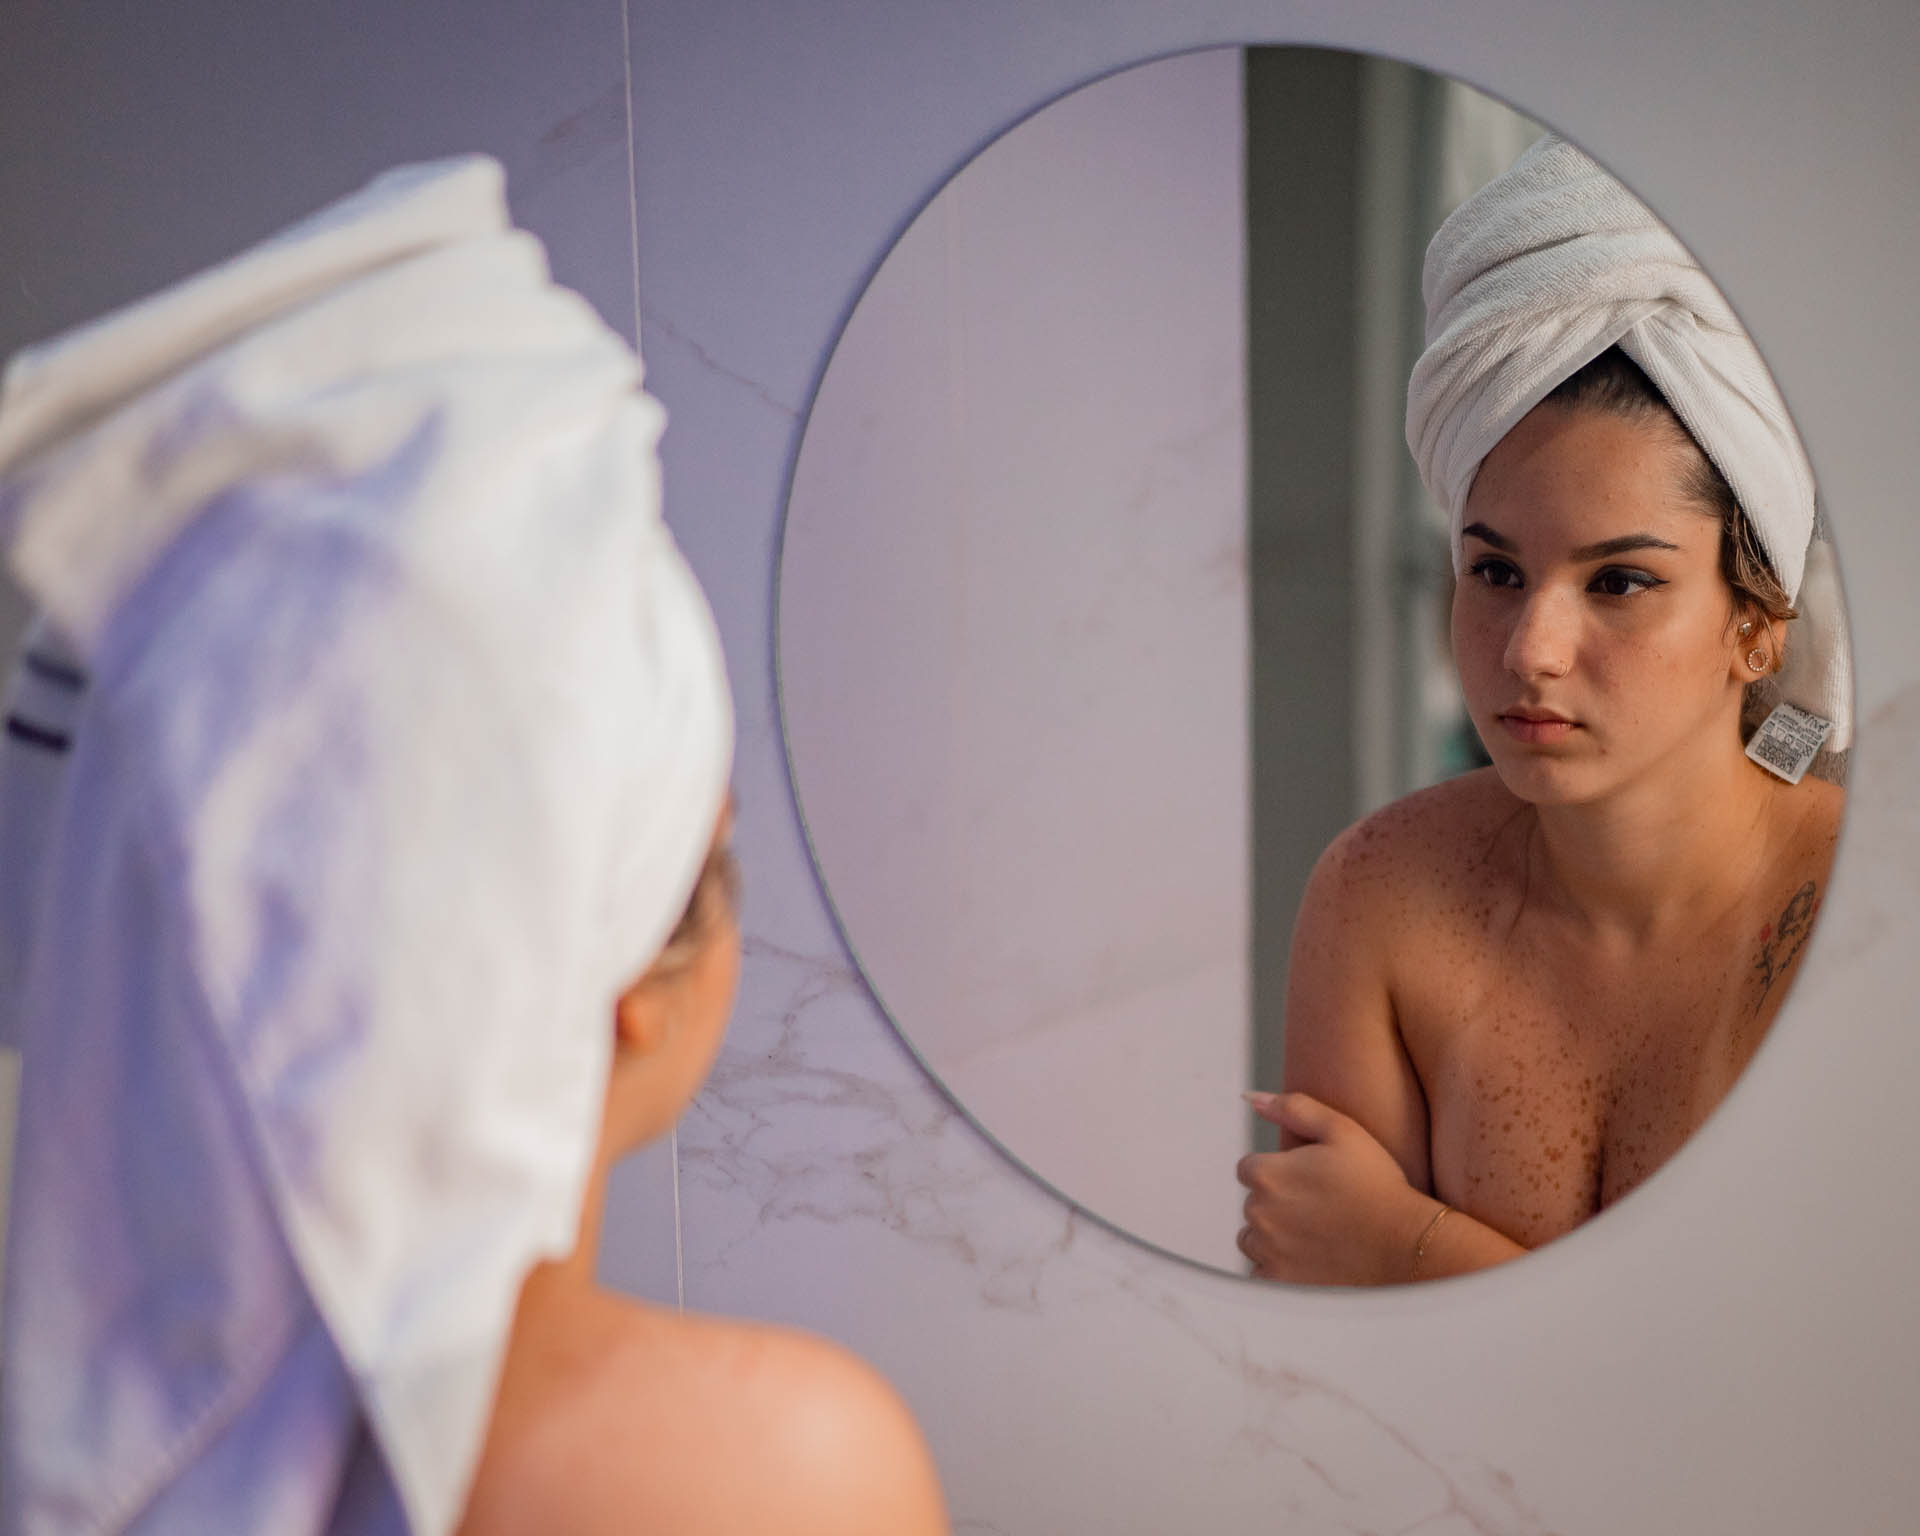 mnodelo seminua em ensaio fotografico sensual em frente ao espelho do banheiro com toalha branca na cabeça